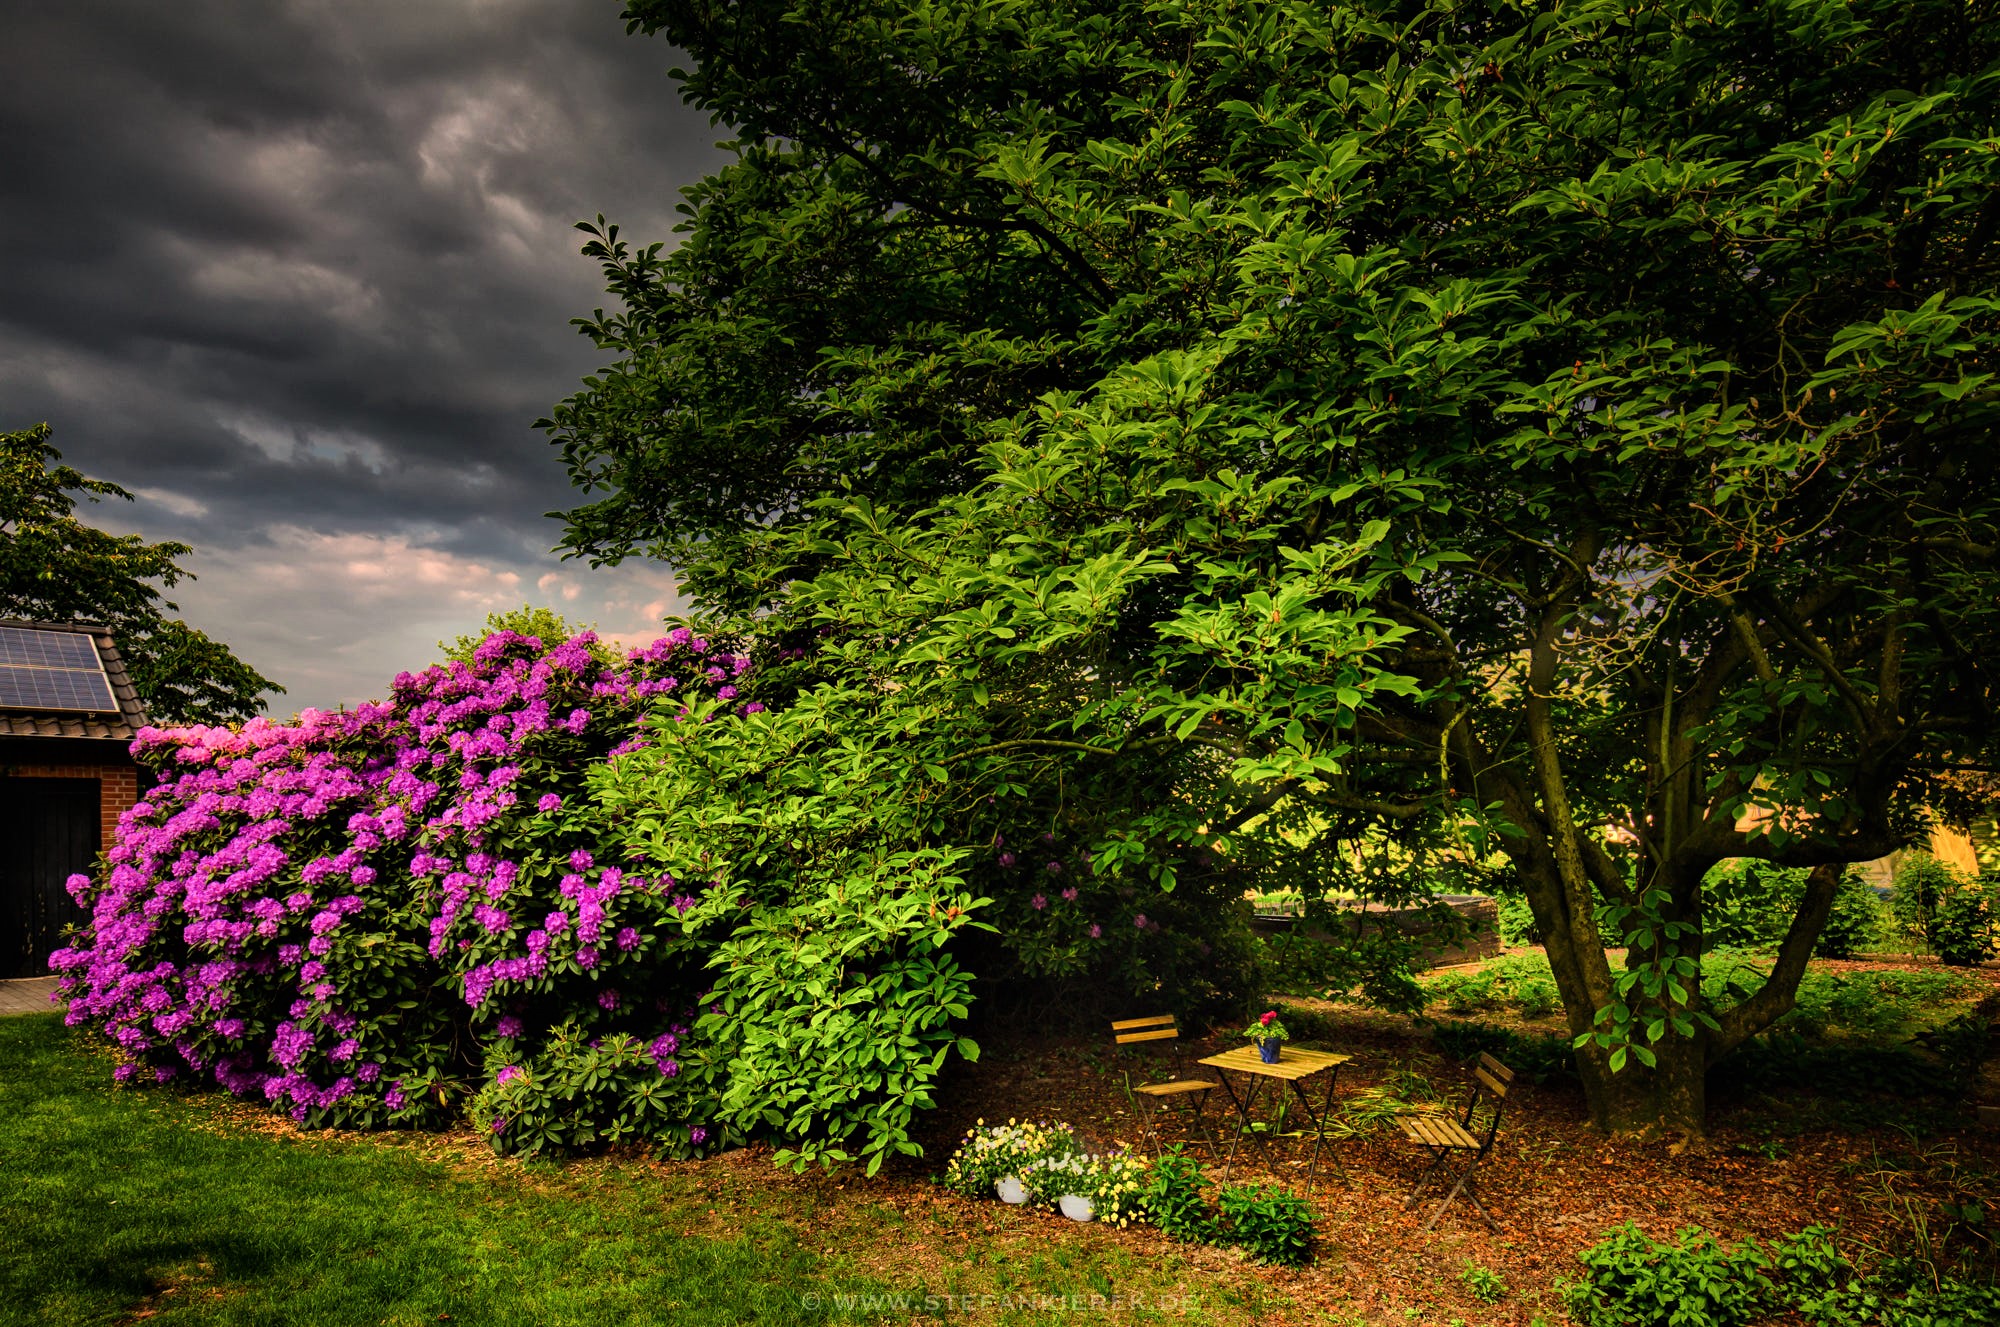 Free download wallpaper Tree, Earth, Garden, Cloud, Azalea, Purple Flower, Man Made on your PC desktop